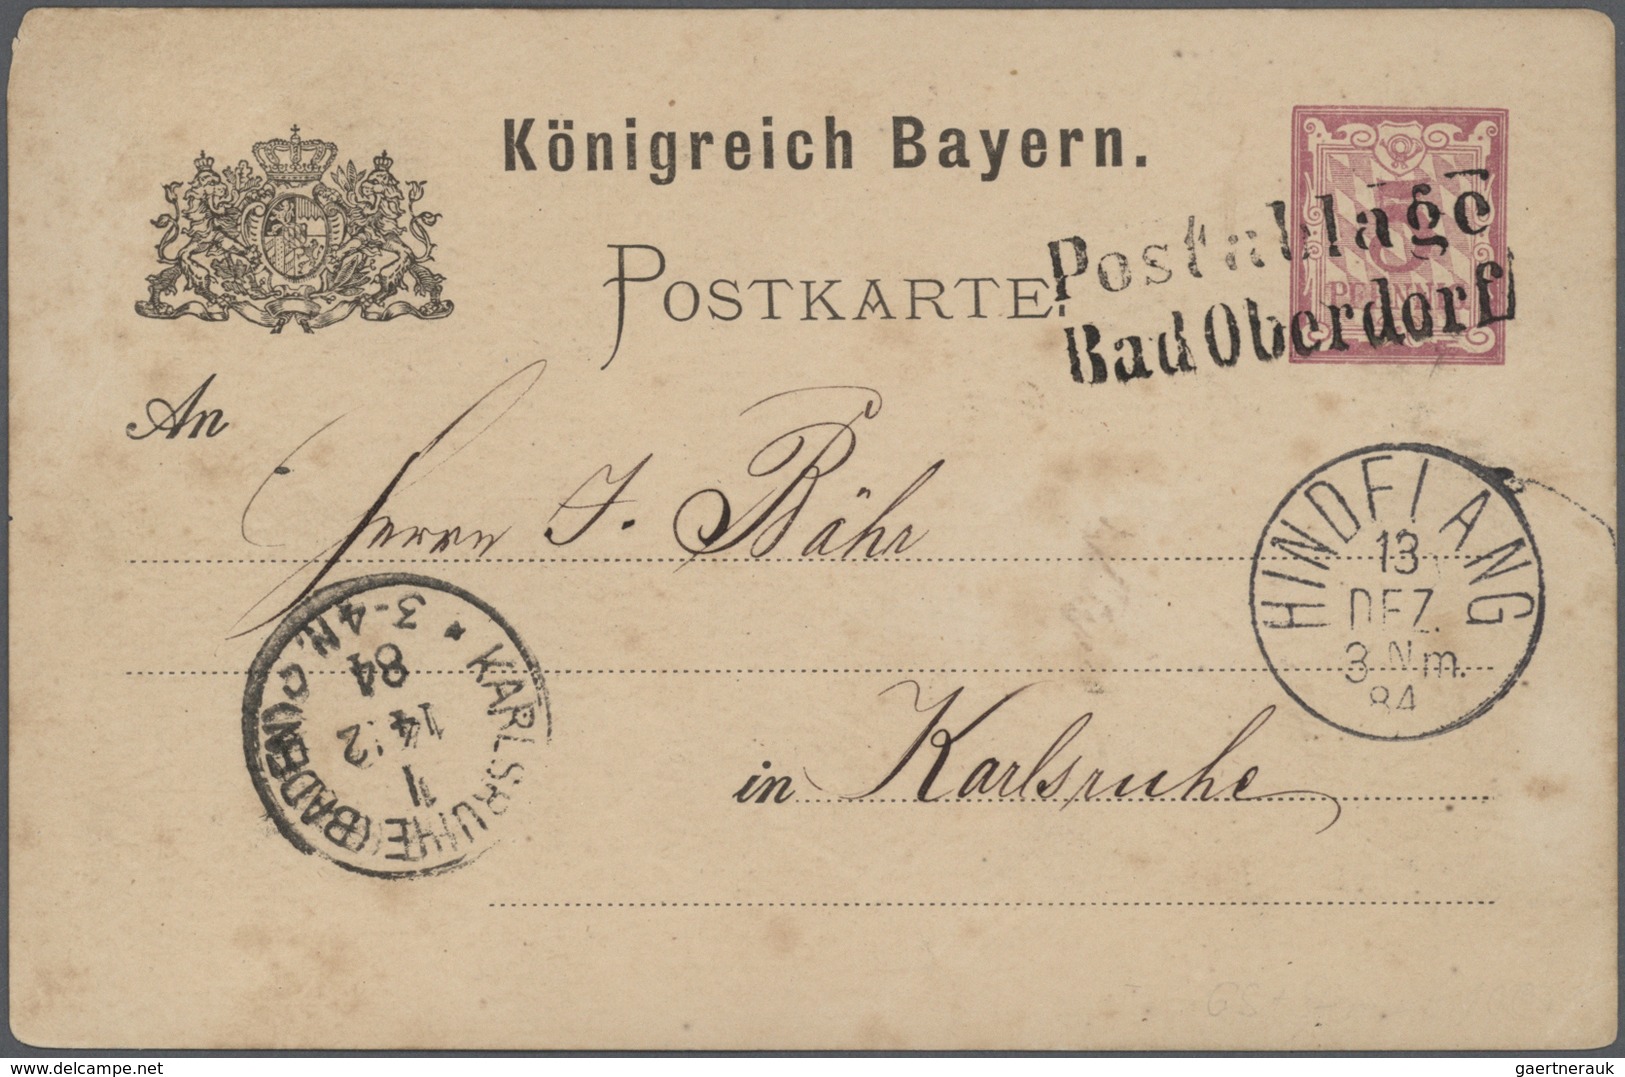 31224 Bayern - Ganzsachen: 1870/1920, vielseitige Partie von über 100 meist gebrauchten Ganzsachen, vorwie